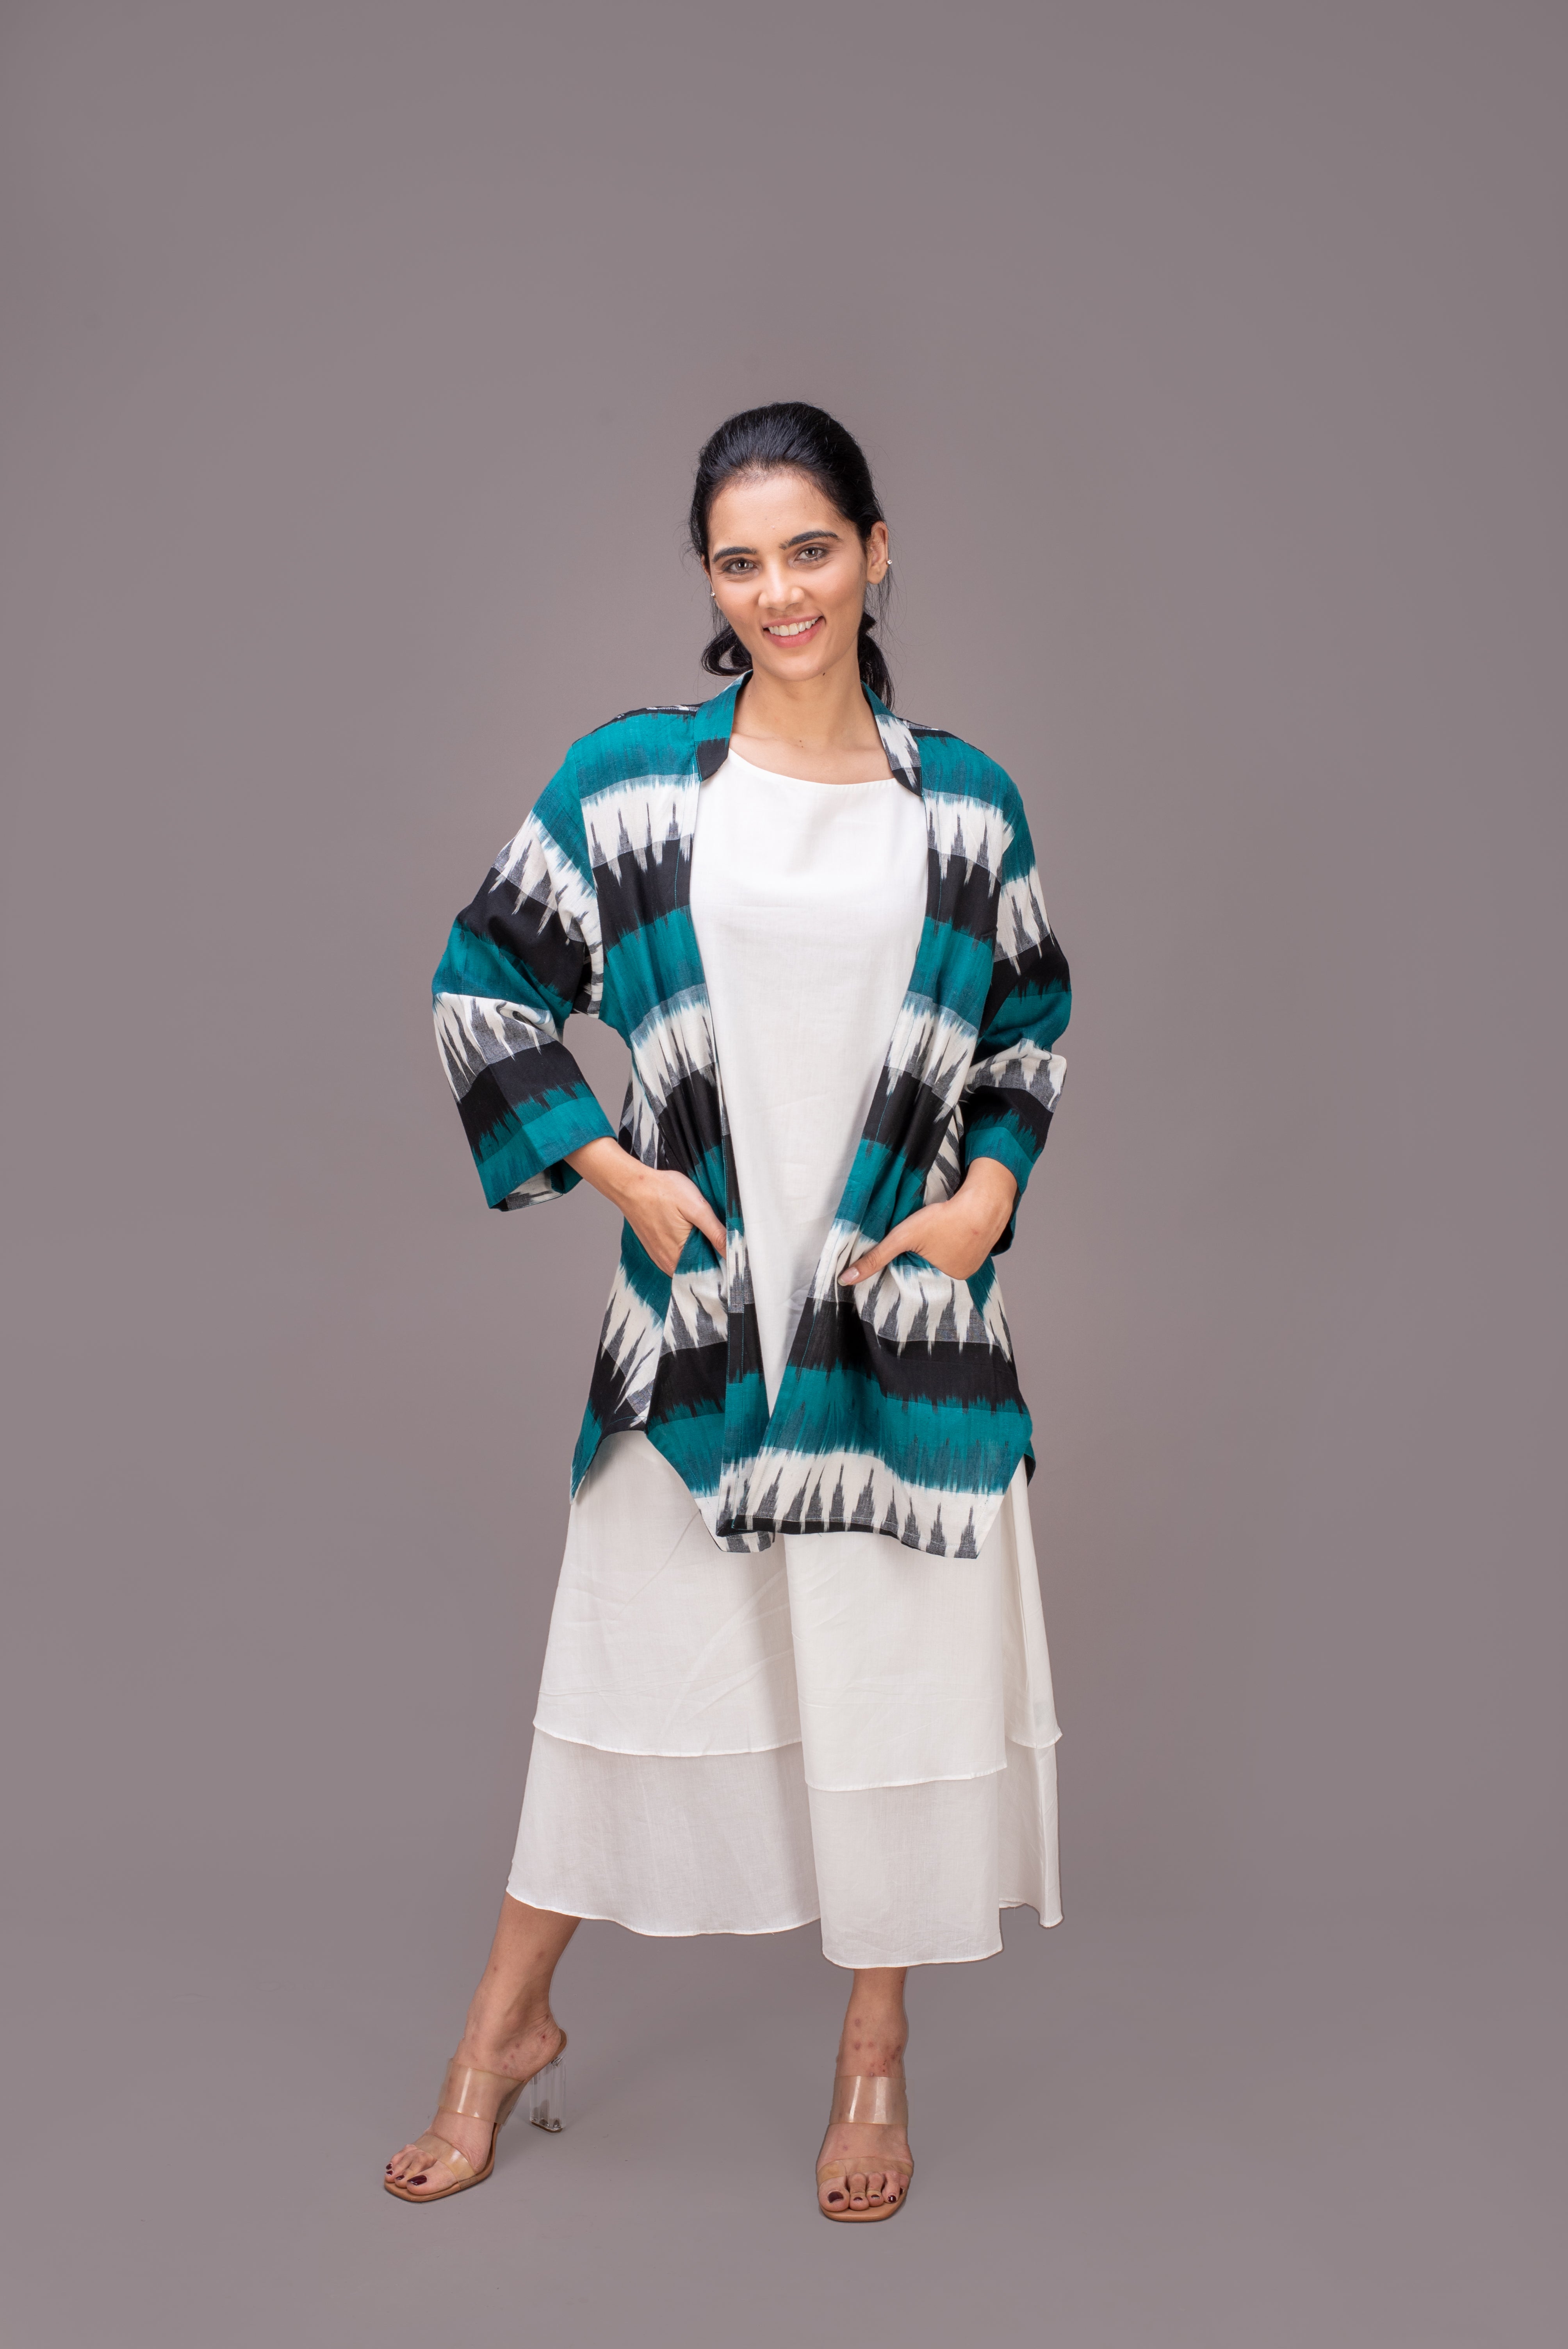 513-323 Whitelotus "Kimono" Women's coat